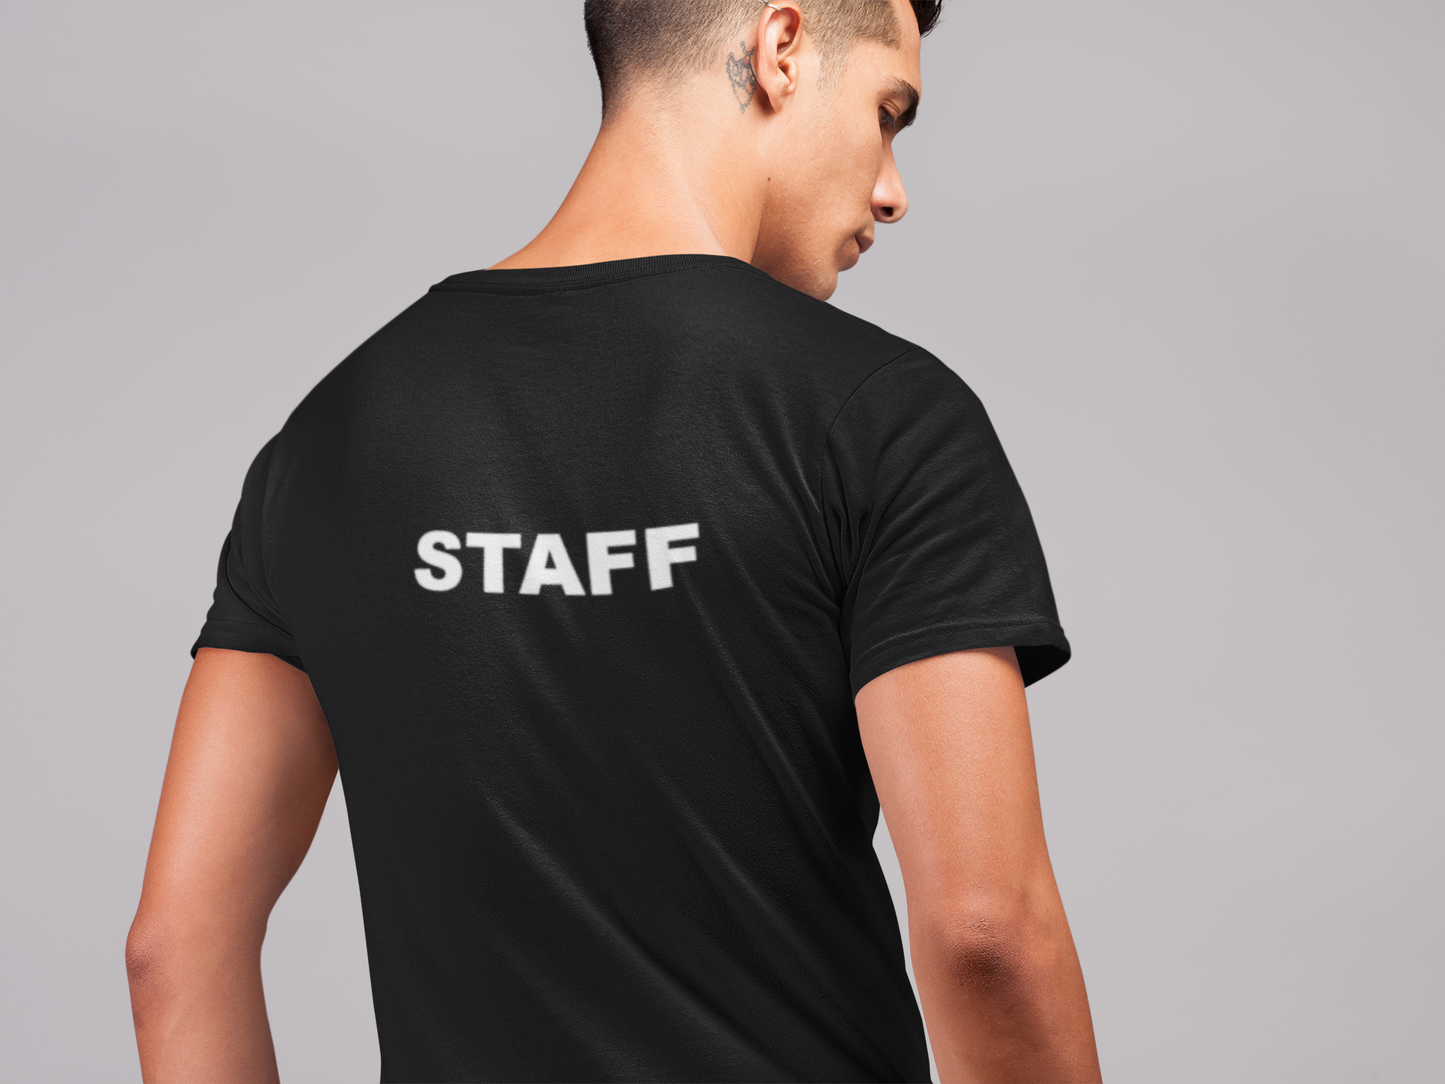 The Staff Tee